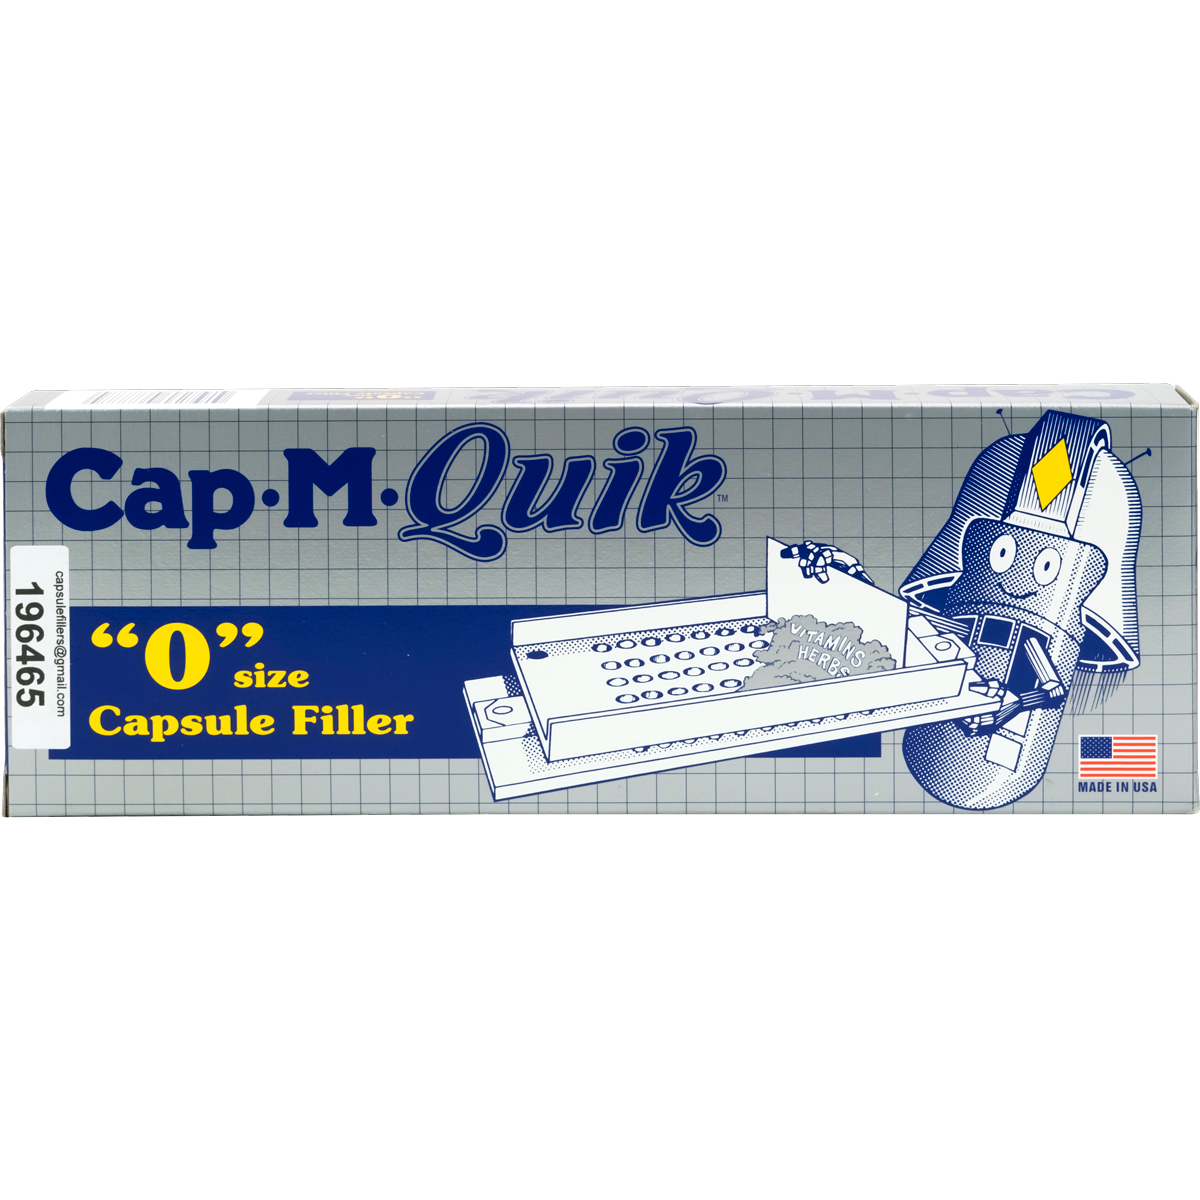 Cap-M-Quik  Size '0' Capsule Filler